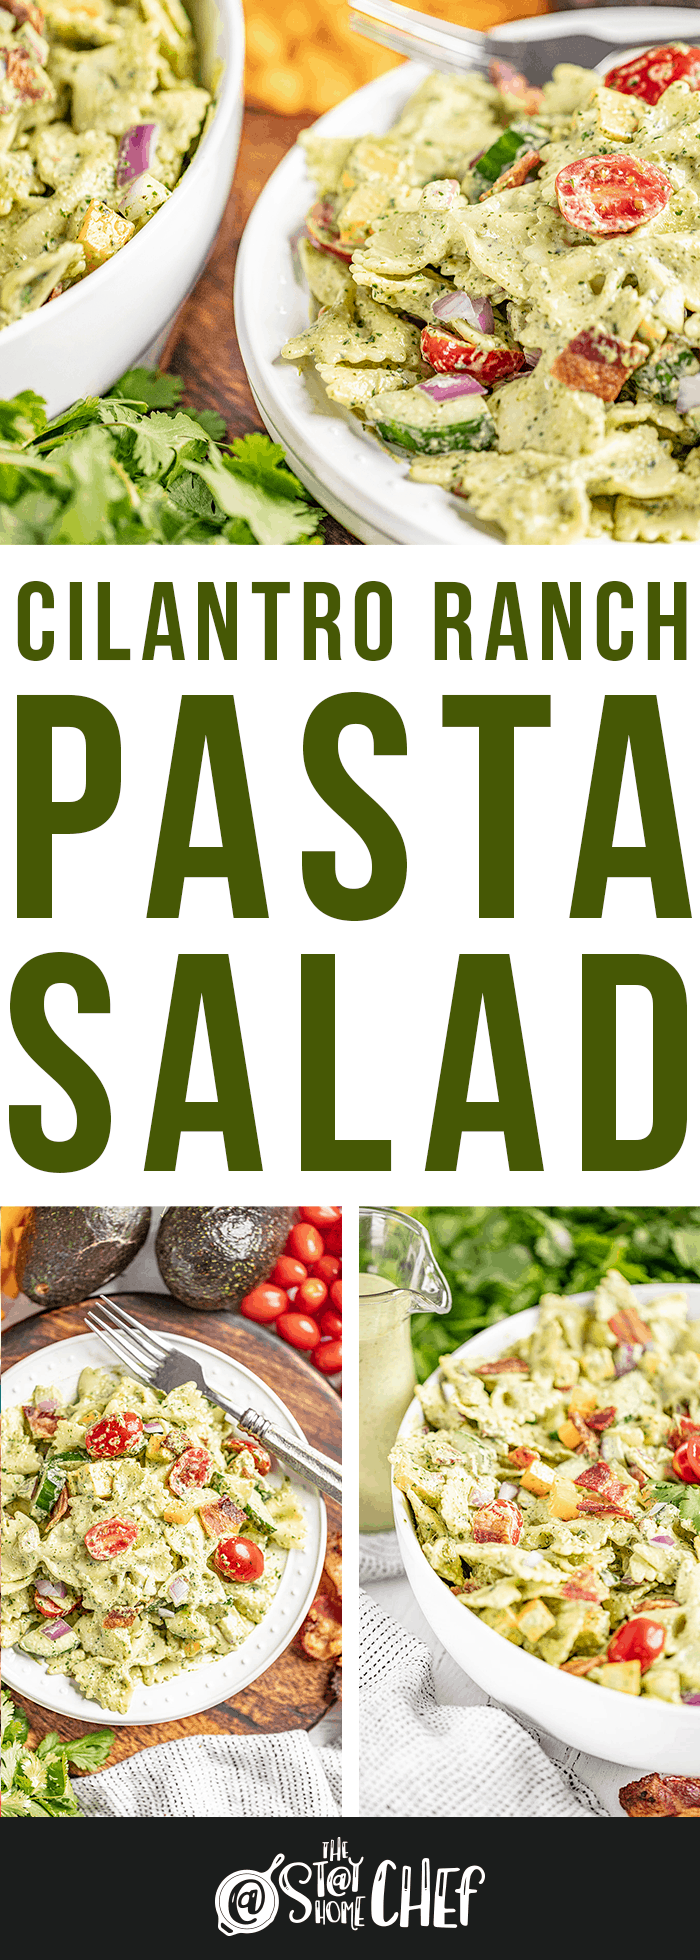 Cilantro Ranch Pasta Salad